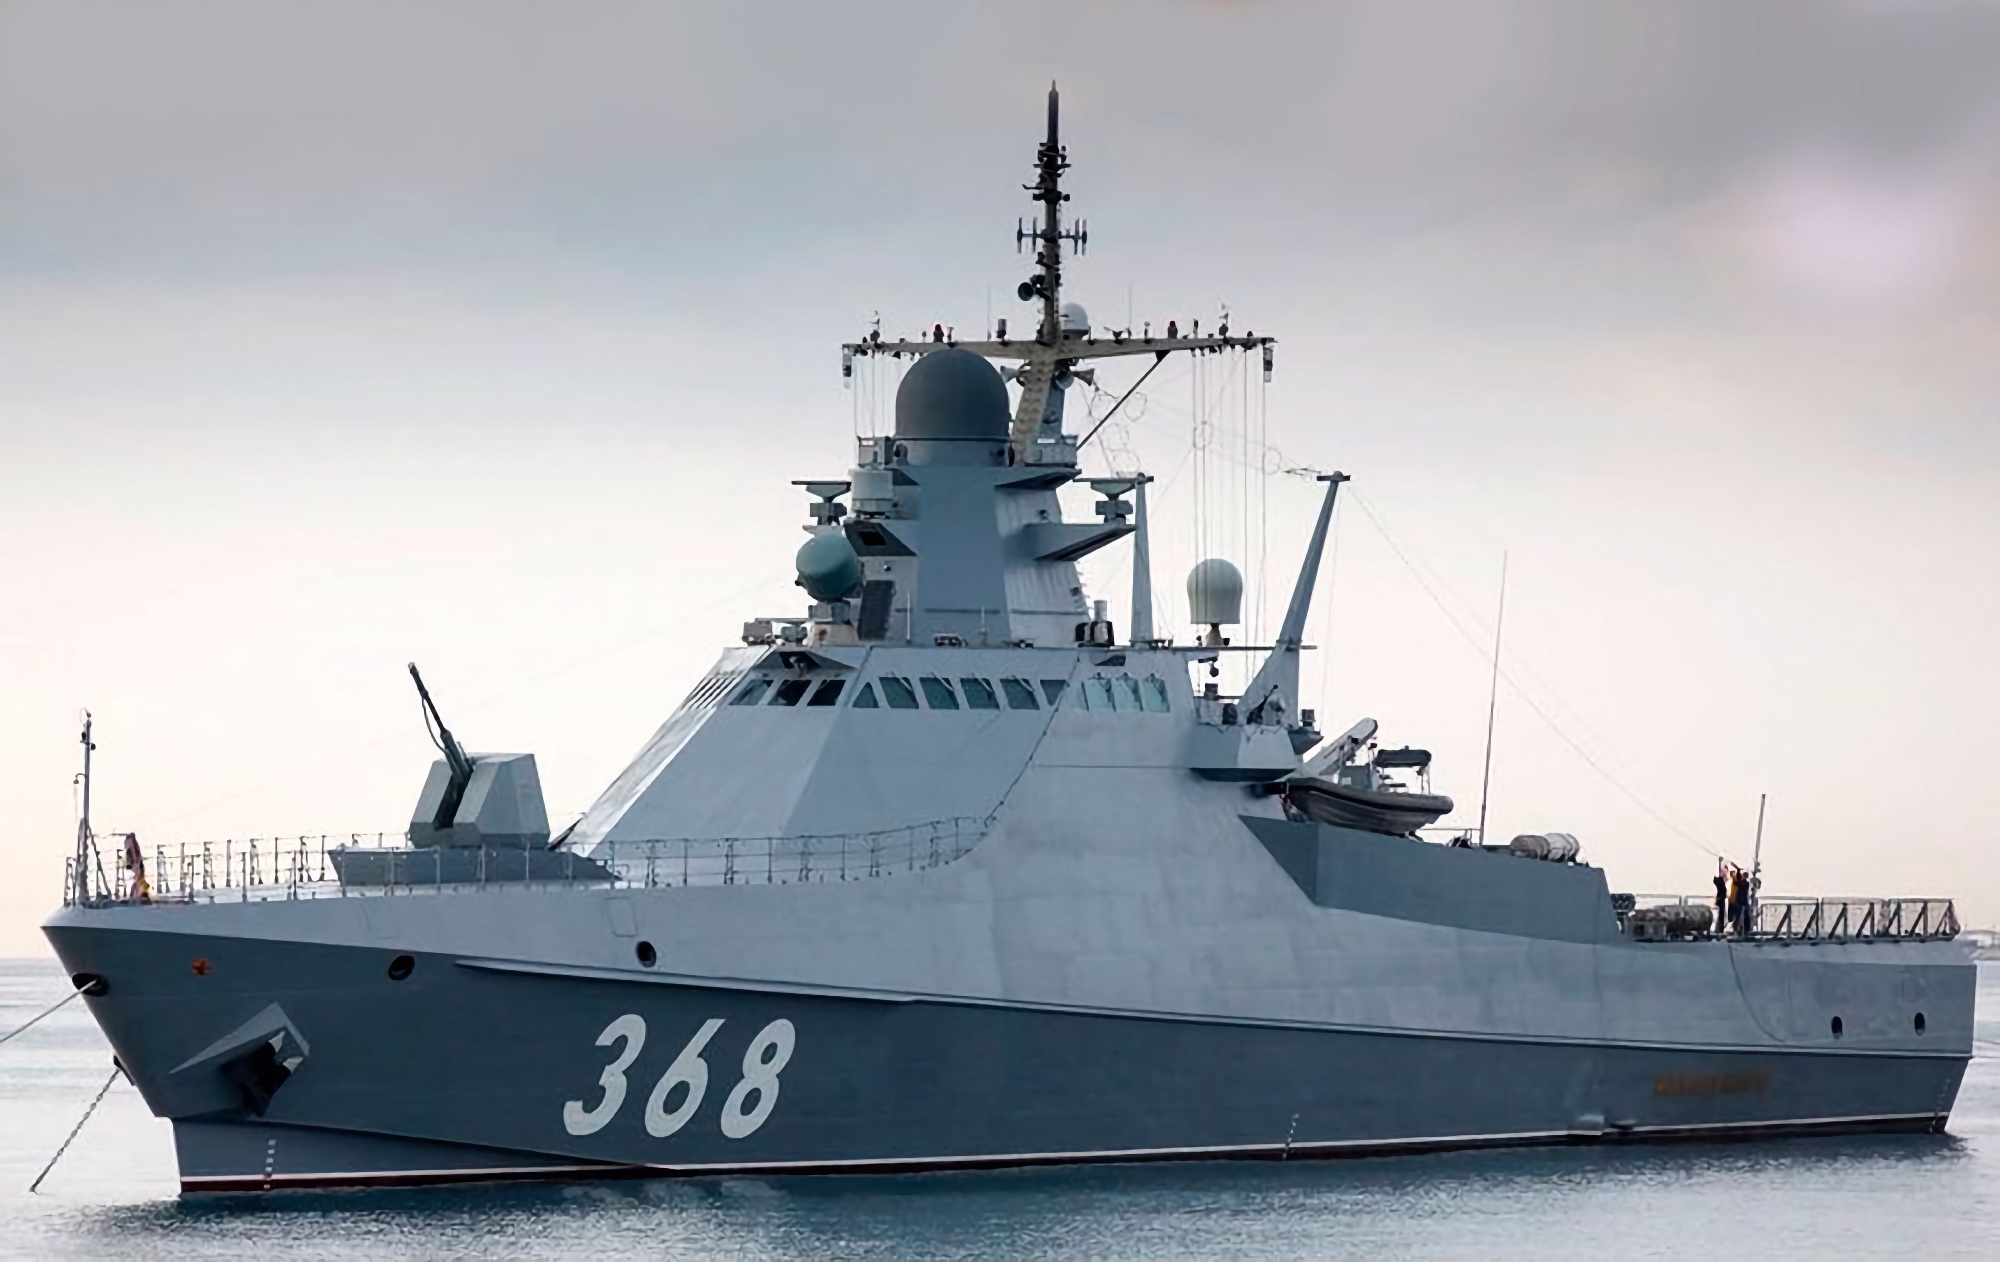 Ukrainska specialenheten Group 13 med hjälp av en Magura V5 marin drönare förstörde ett ryskt fartyg av projektet 22160 "Sergey Kotov" värt 65 miljoner dollar